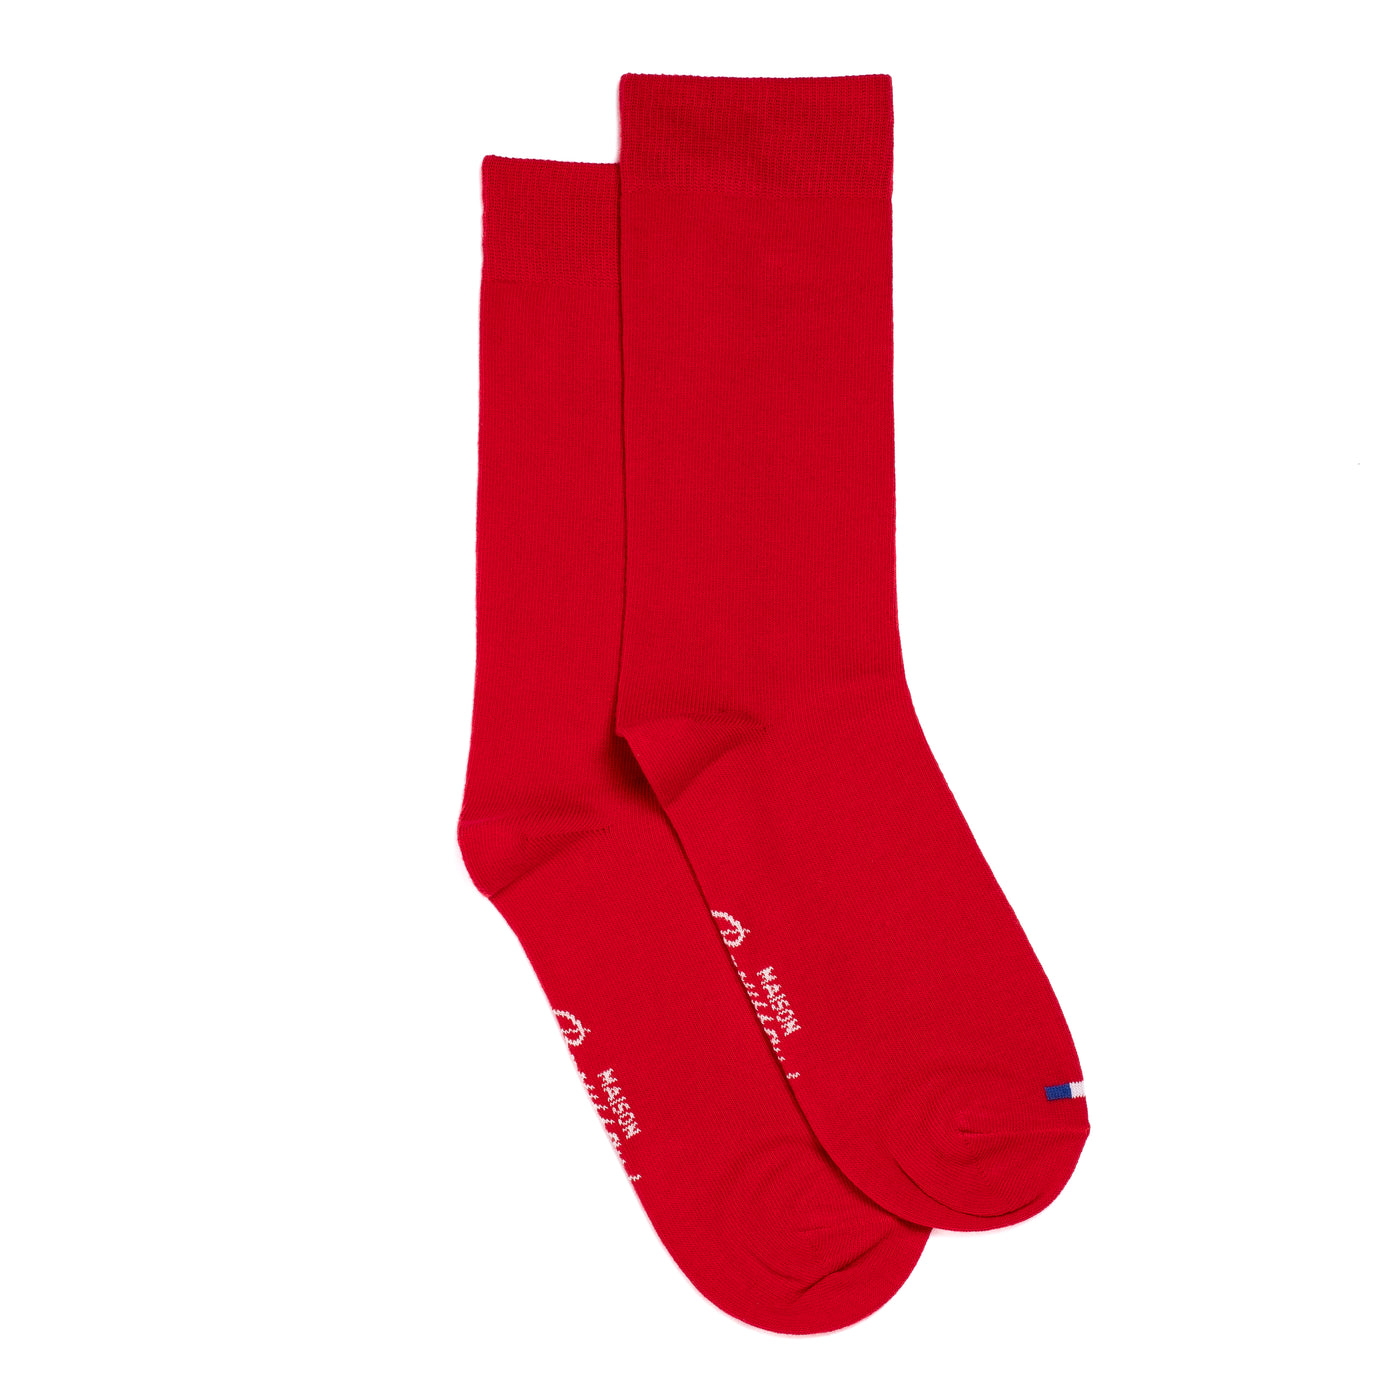 Plain red socks